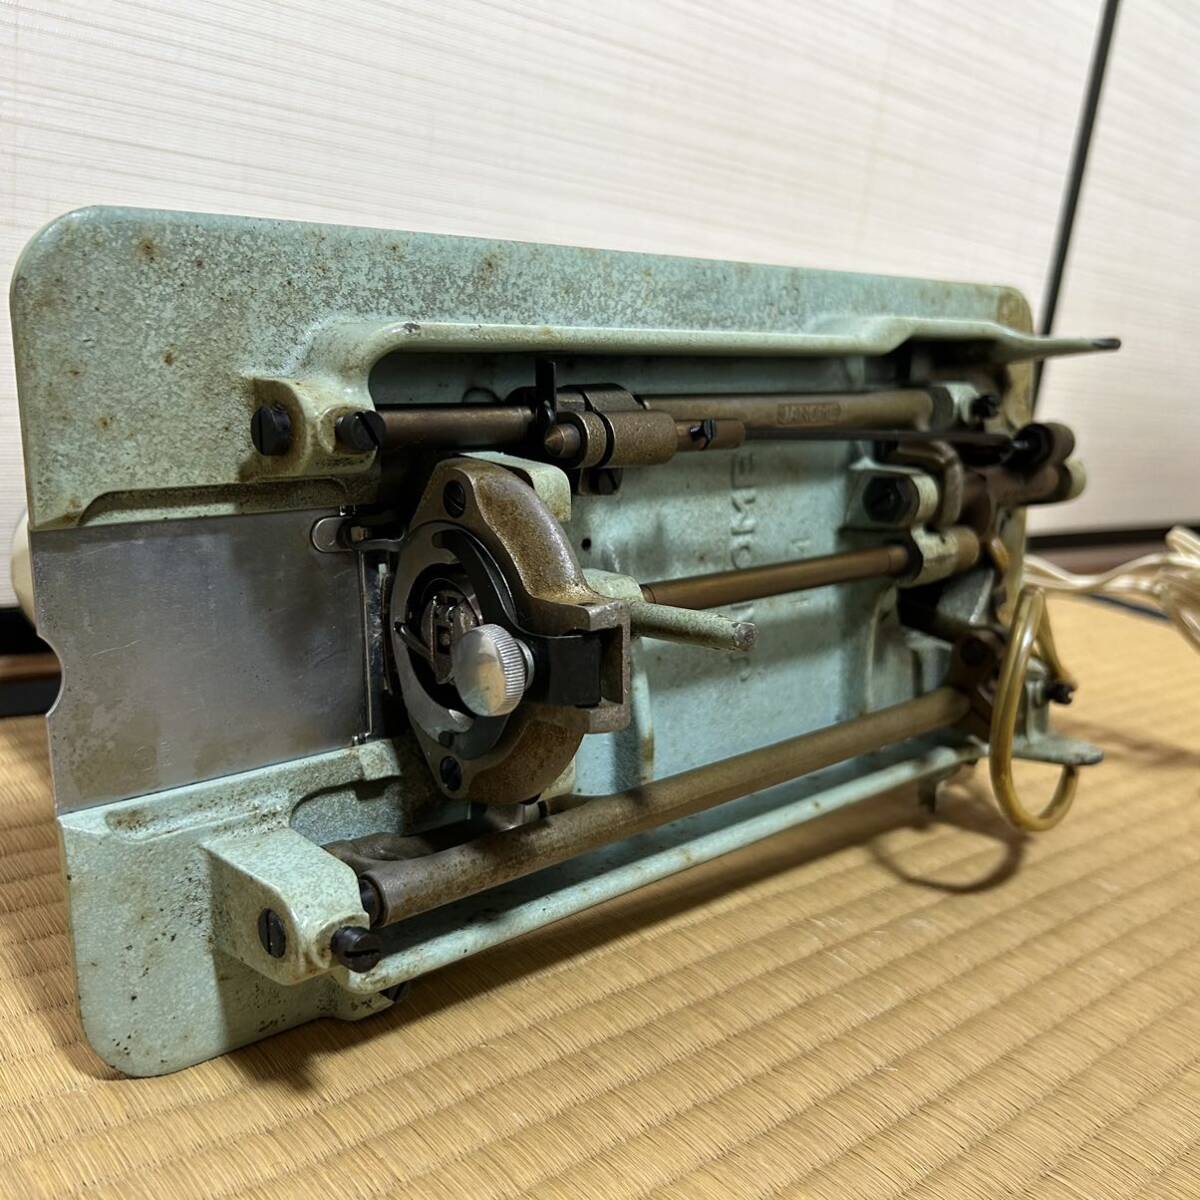  Janome швейная машина JANOME контроллер densipon2 античный ручная работа шитье рукоделие Showa Retro рукоделие 